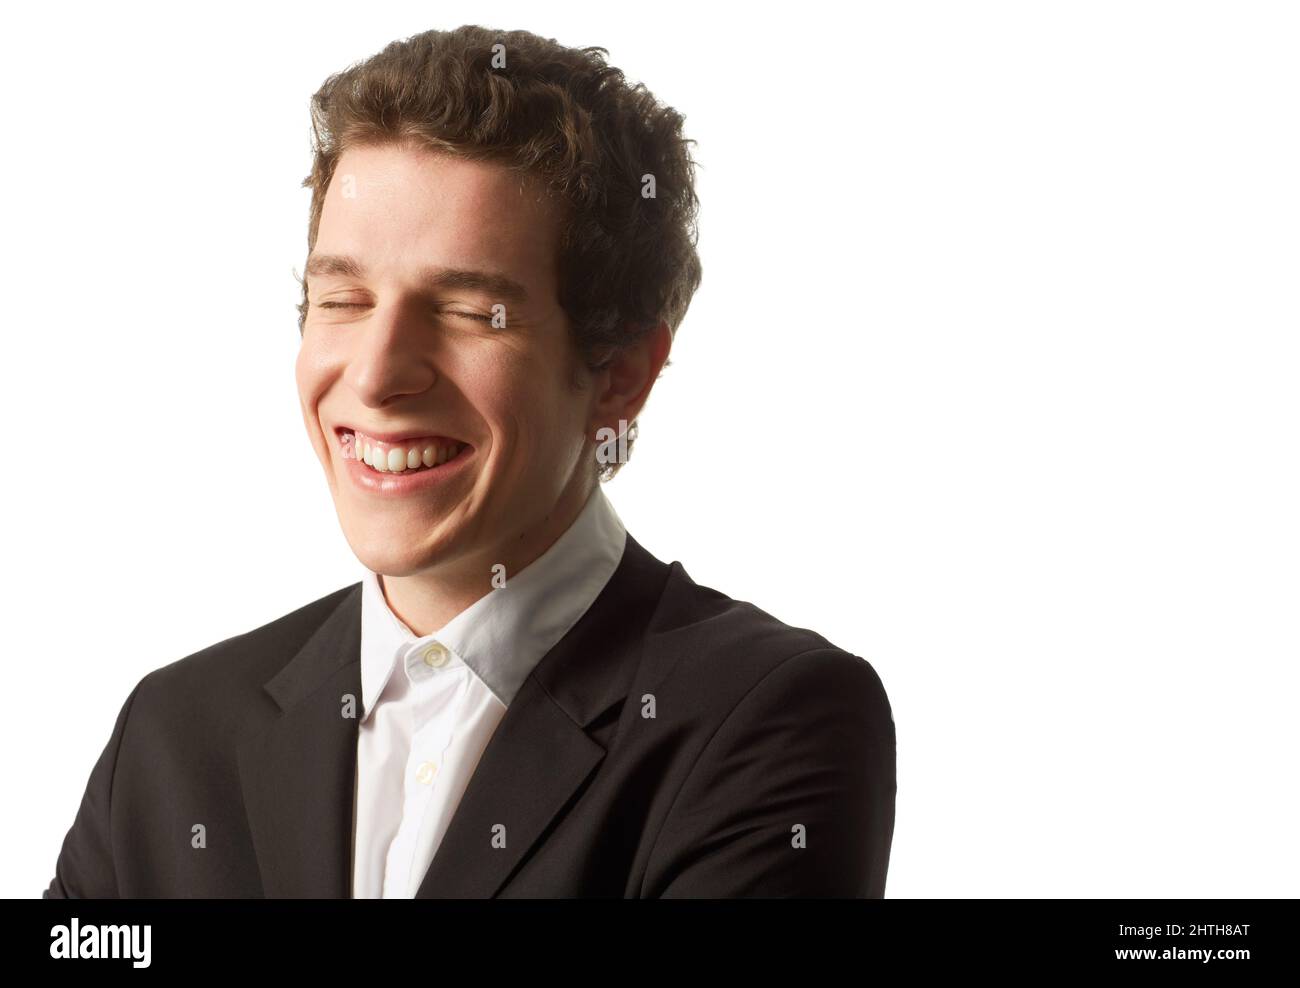 Aufrichtiges Lächeln. Ein junger Mann, der ein knöpftes Hemd und eine Jacke trägt, lacht, während er vor einem weißen Hintergrund steht. Stockfoto